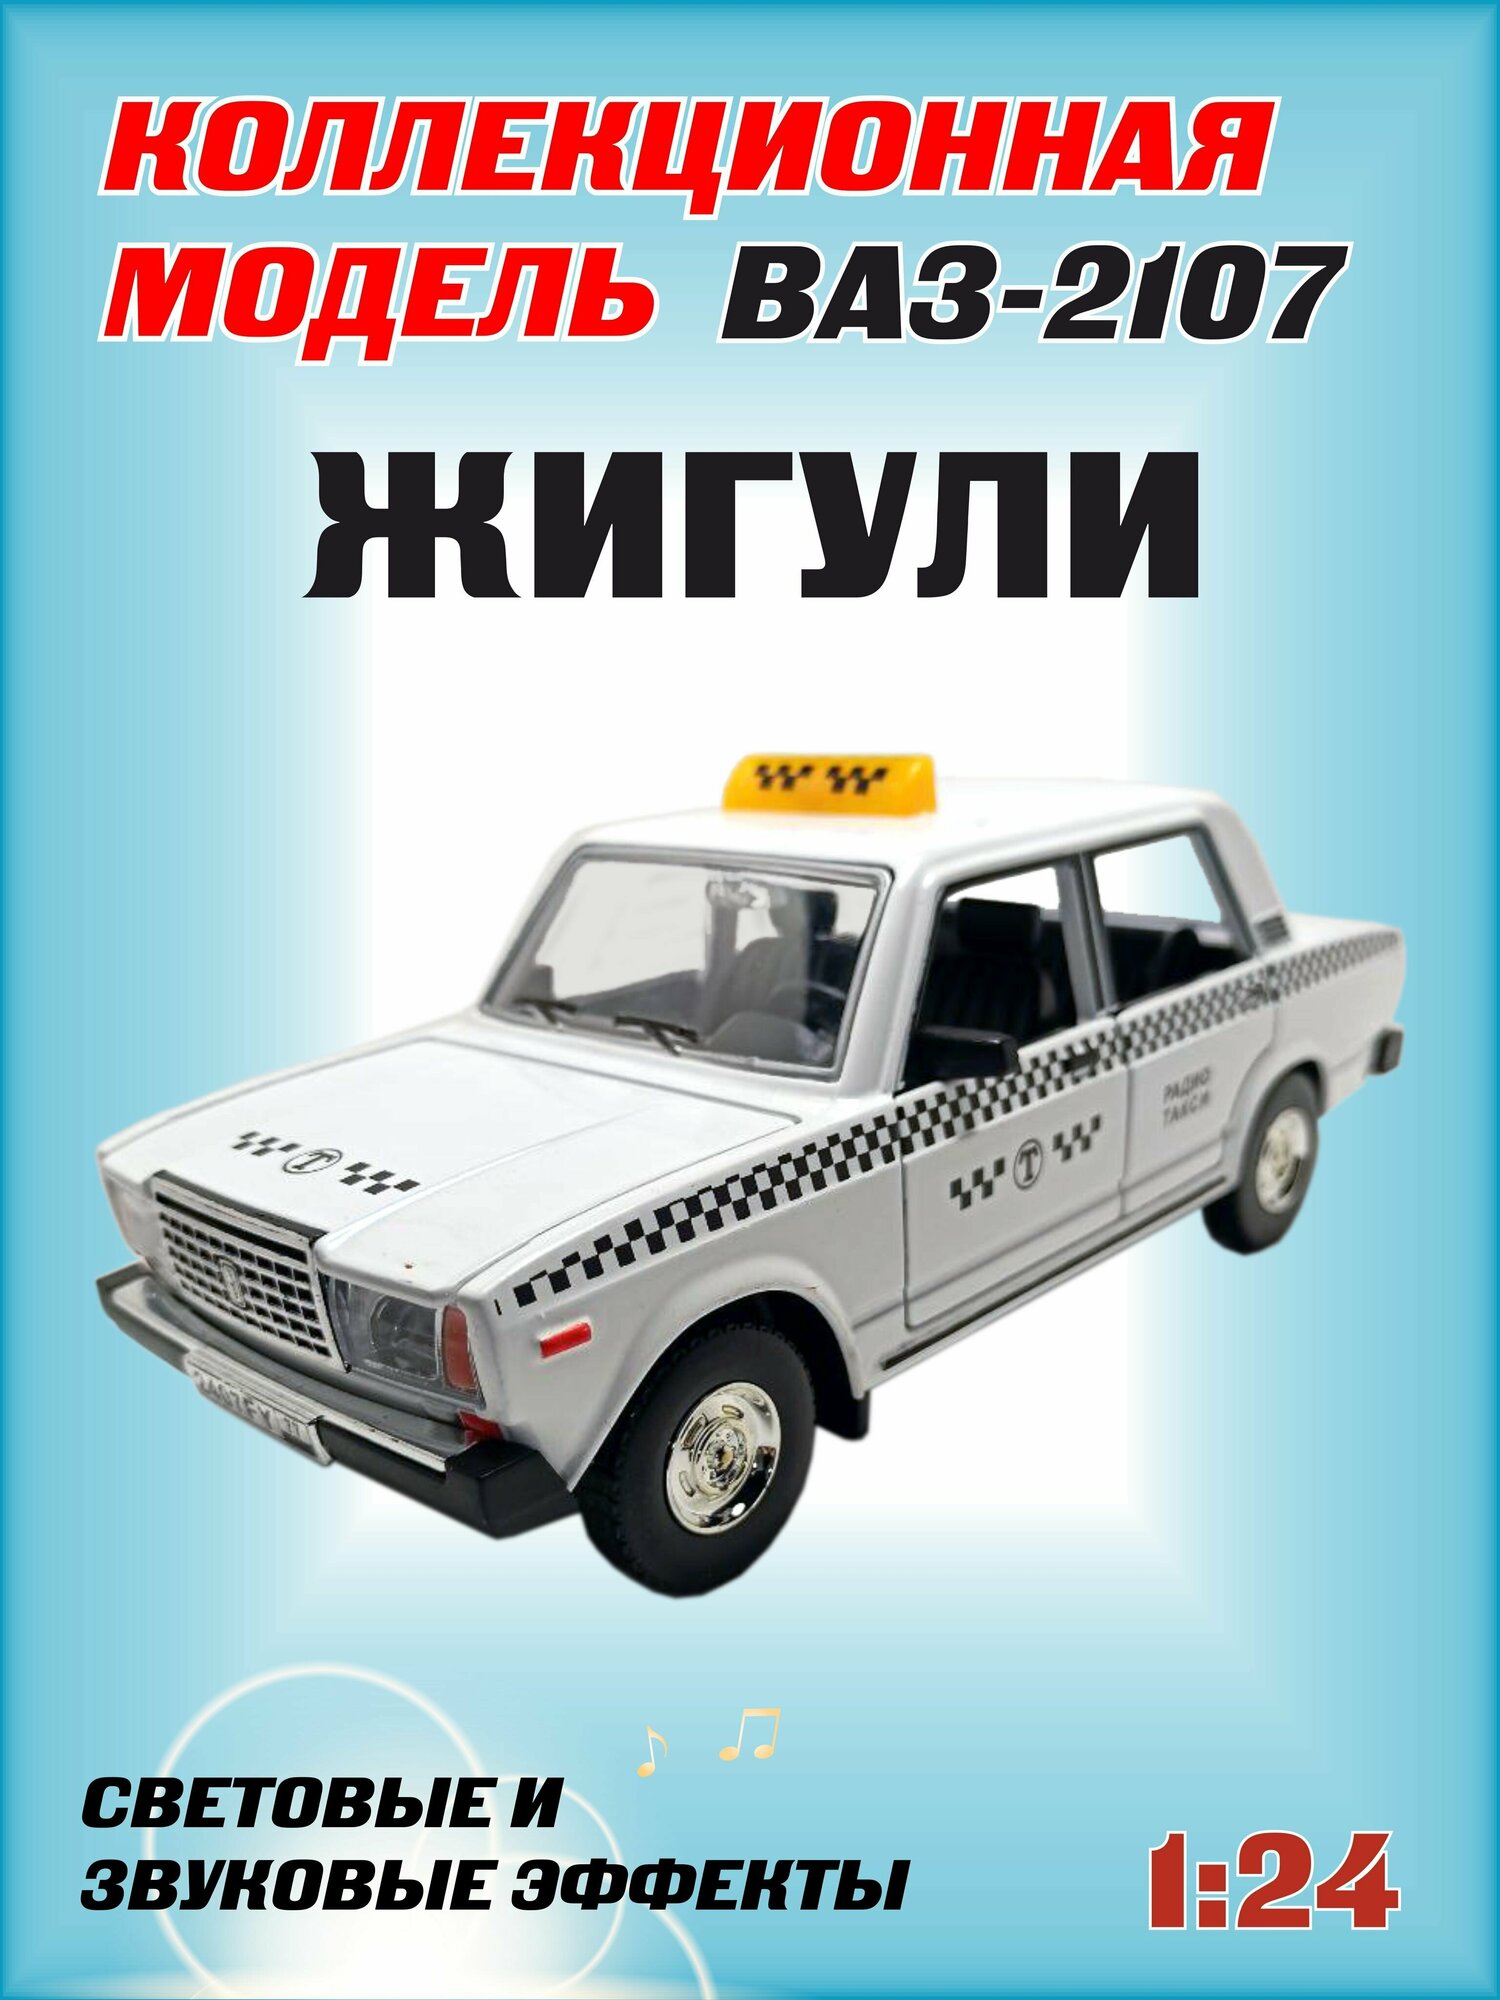 Коллекционная машинка игрушка металлическая Жигули ВАЗ 2107 для мальчиков масштабная модель 1:24 белый